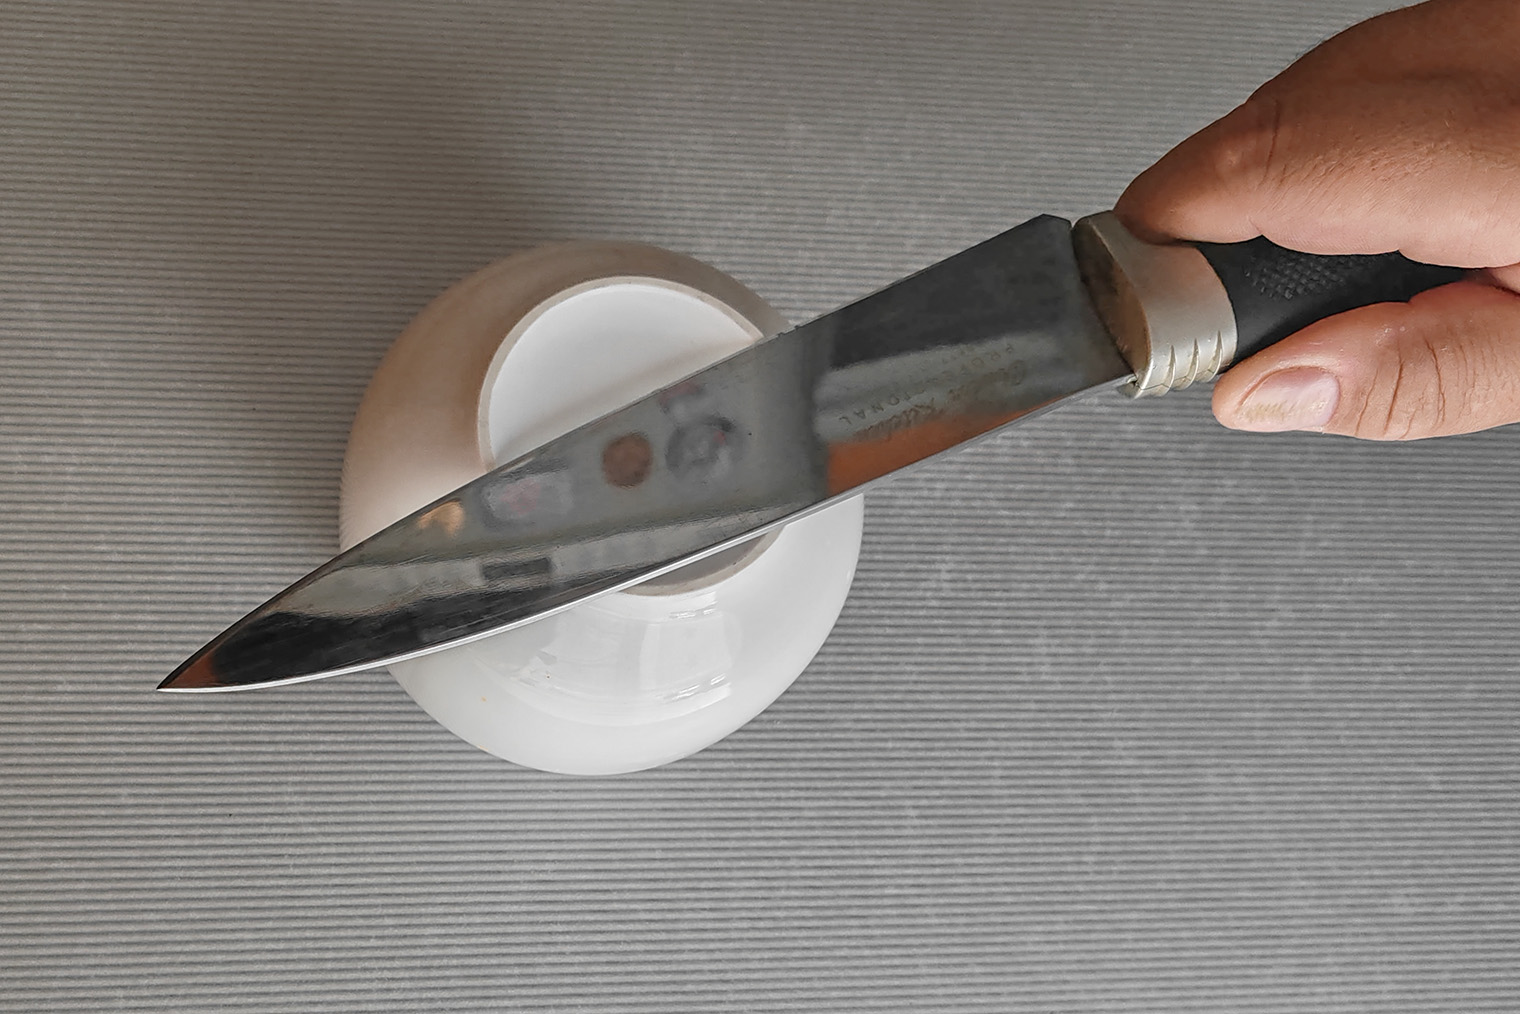 Нож по ободку керамической посуды ведите легко, без нажима, как будто строгаете и хотите срезать край ободка